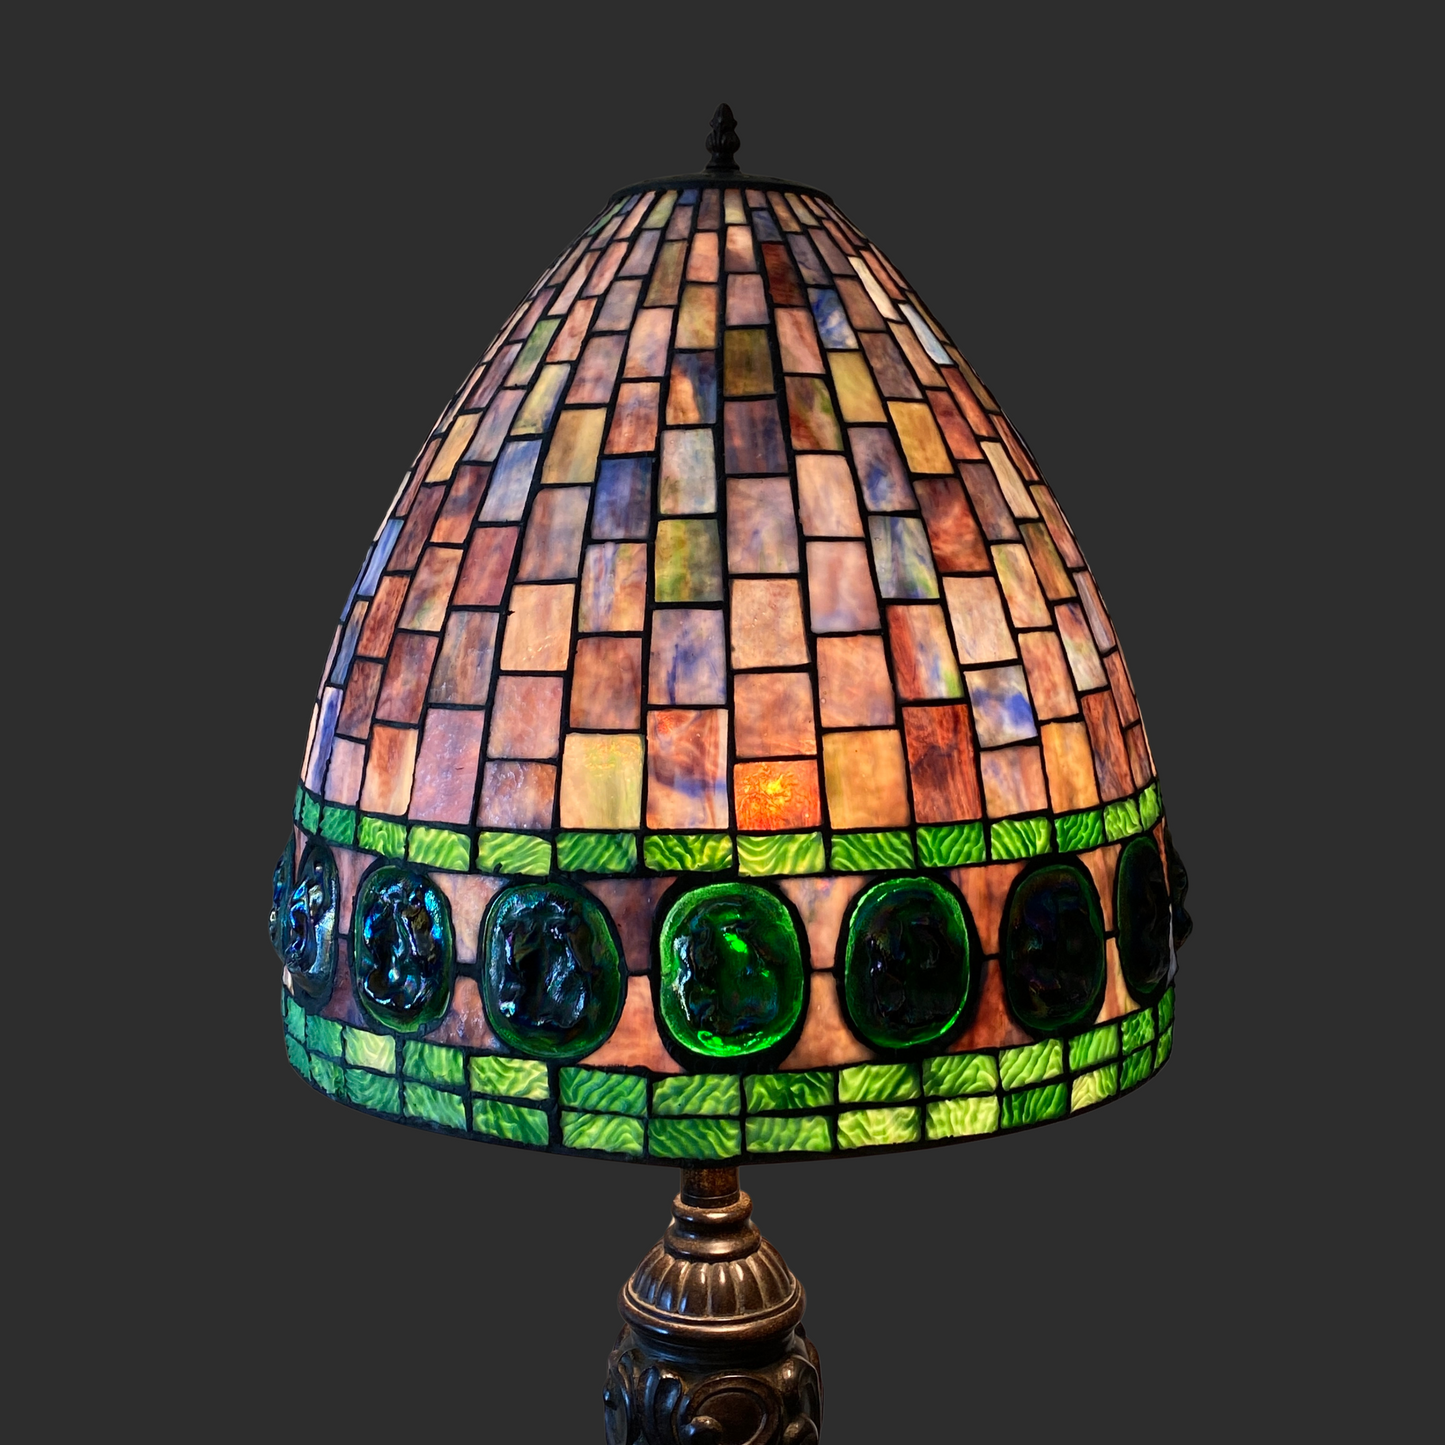 Vintage Tiffany Style Floor Lamp